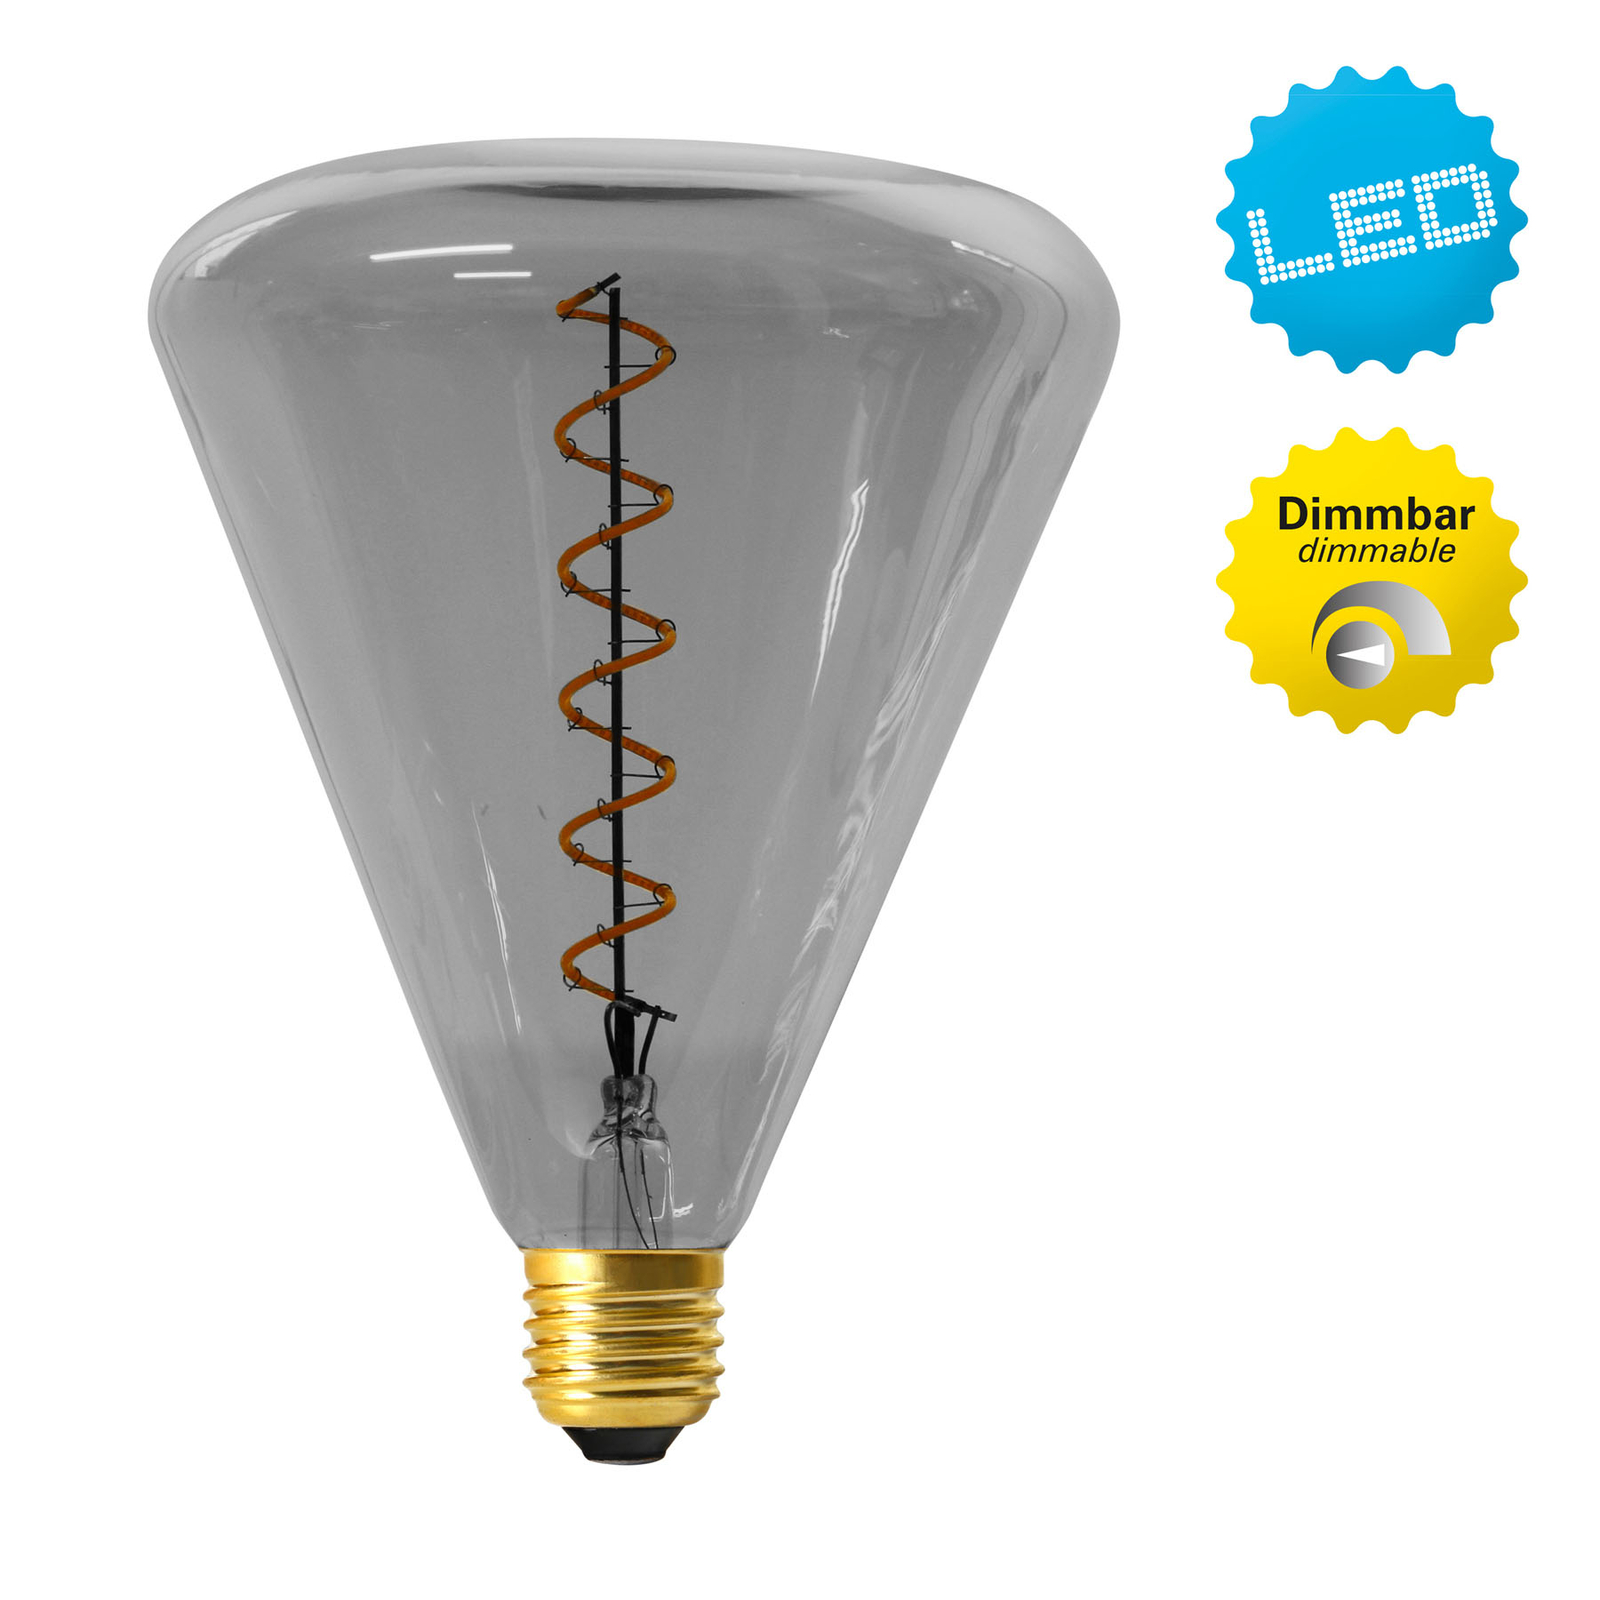 LED lamp Dilly E27 4W 2200K dimbaar, grijs getint